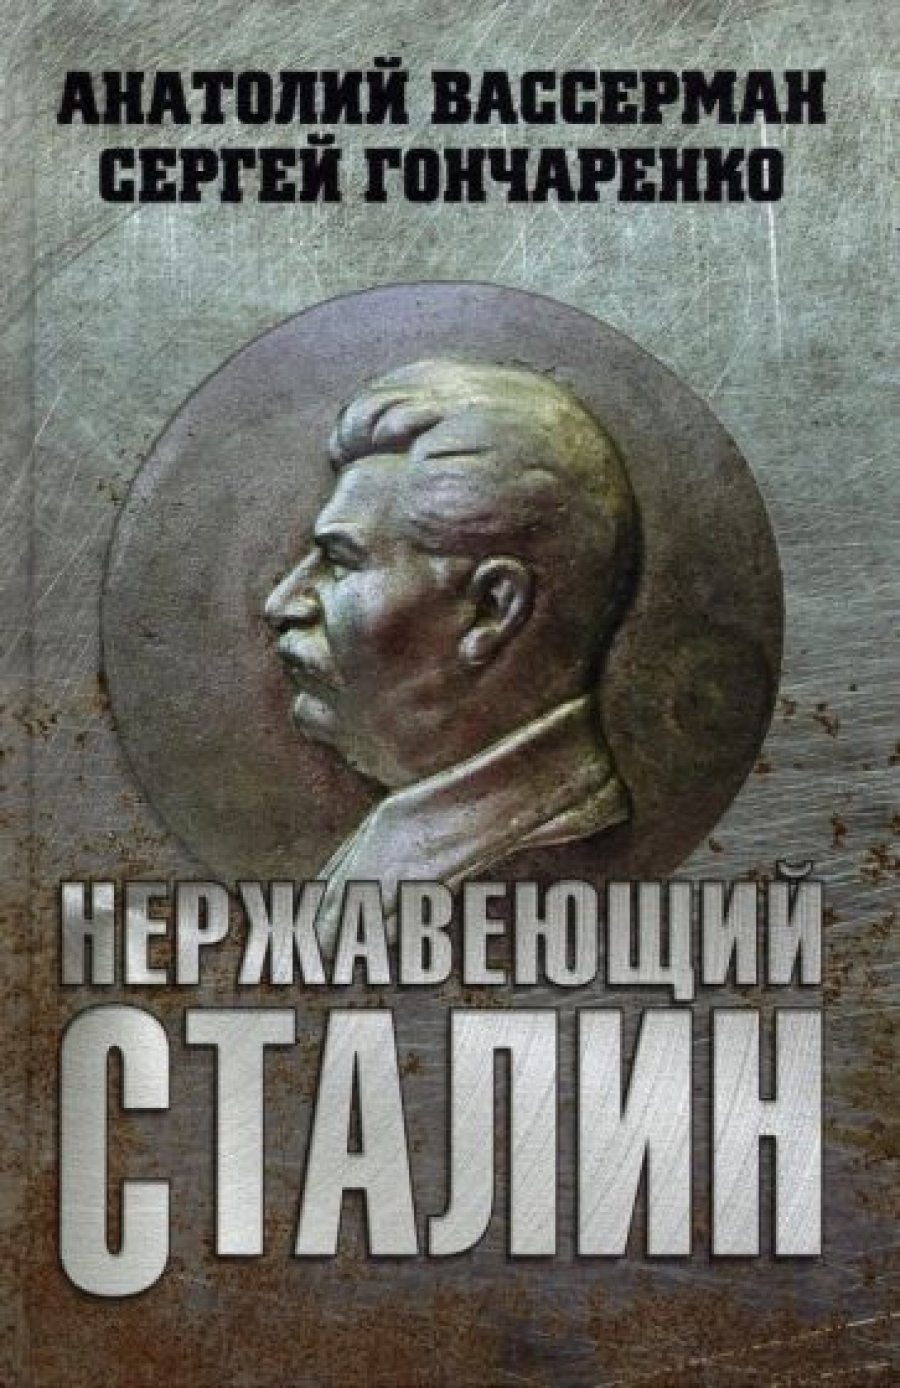 Вассерман А.А., Гончаренко С.В. Нержавеющий Сталин 